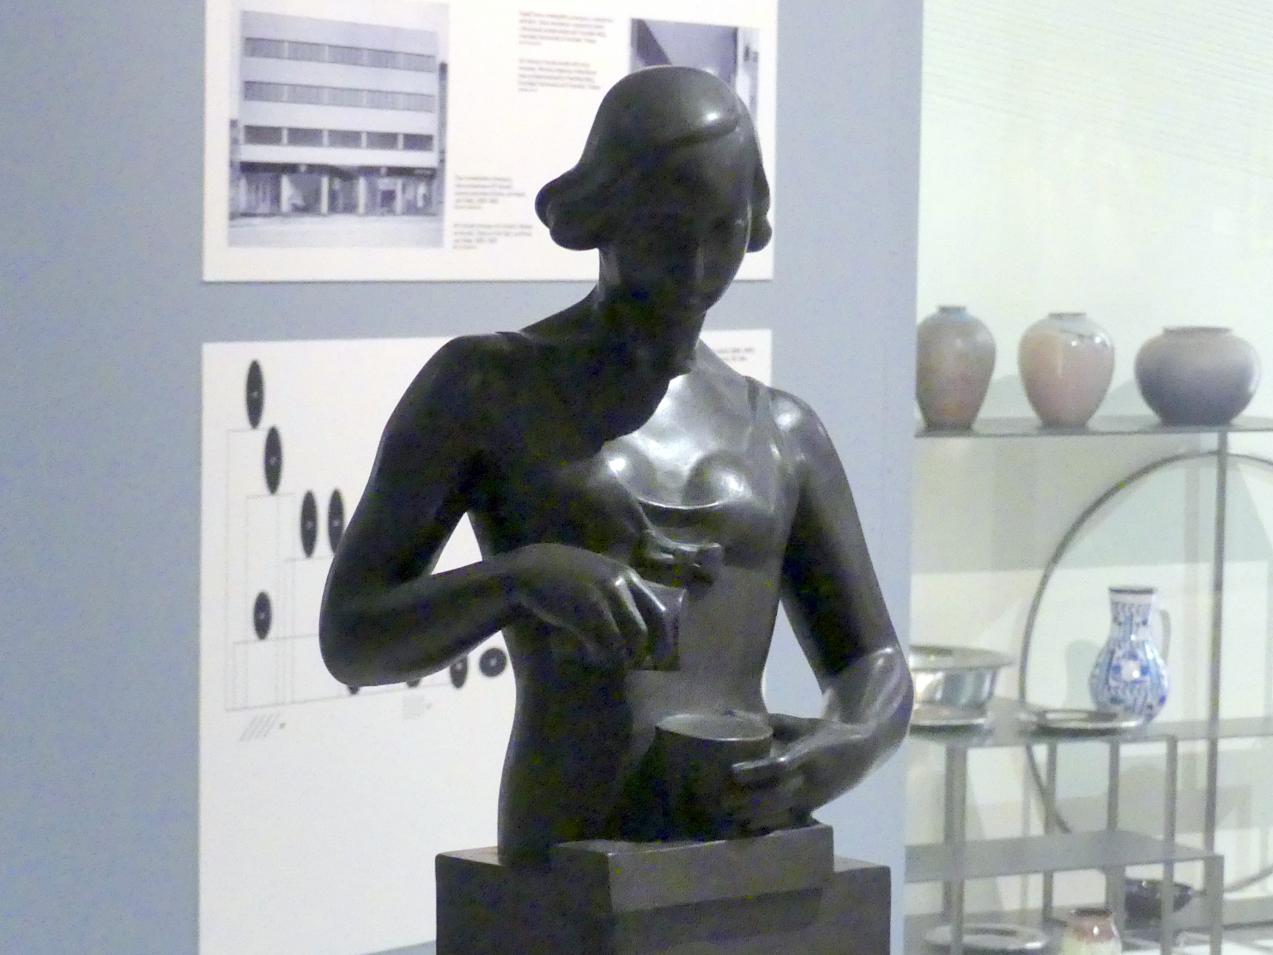 Fraňo Štefunko (1934), Frau mit Geschirr, Prag, Nationalgalerie im Messepalast, 1918-1939, Saal 16, 1934, Bild 3/5